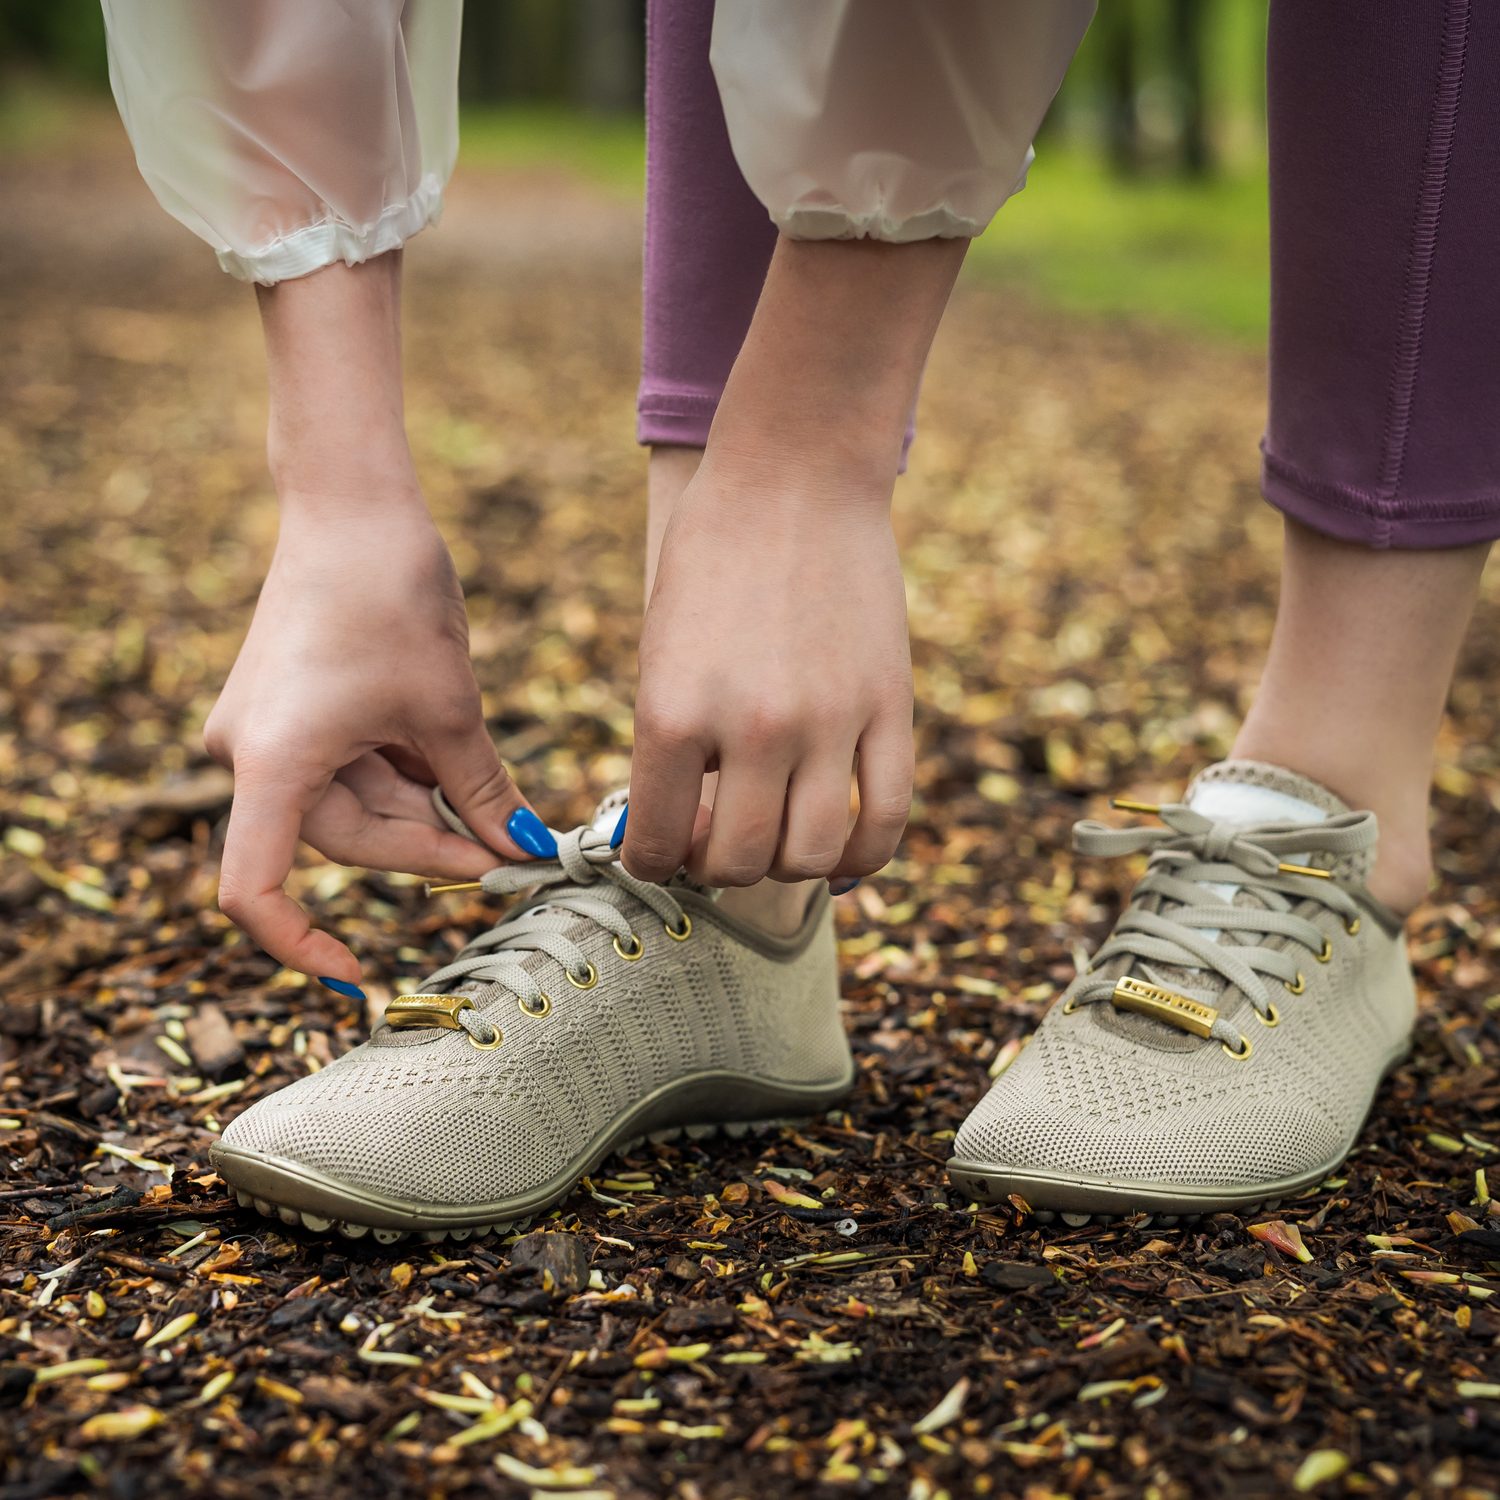 naBOSo – Chůze vs. hubnutí – shoďte nadbytečná kila při každodenním pohybu  – Zažijte pohodlí barefoot bot